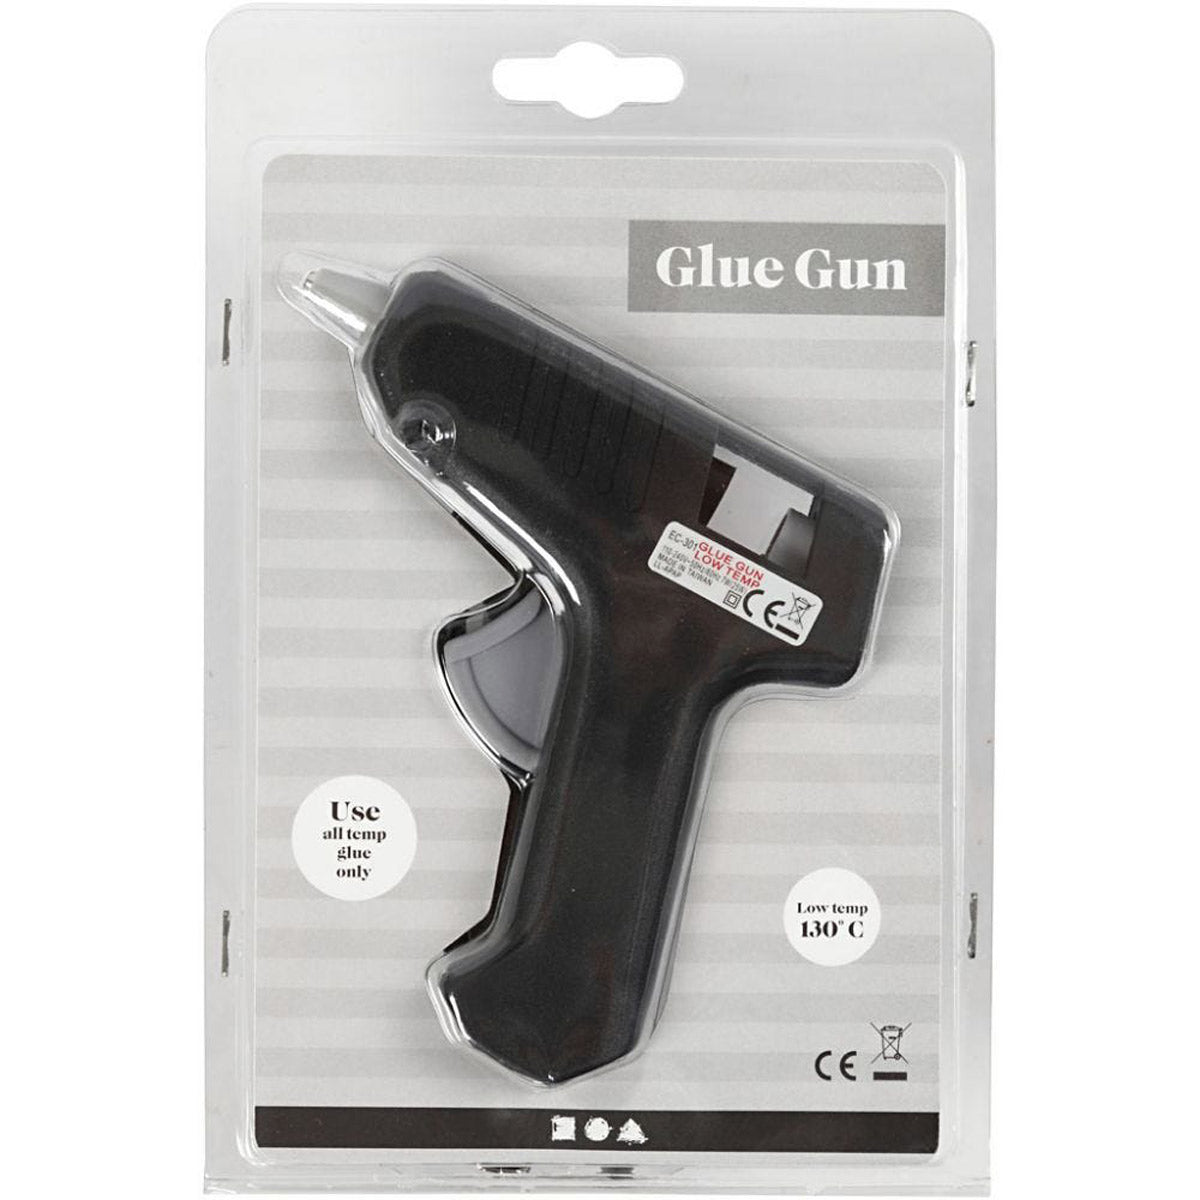 Mini Glue Gun - Low Temperature 130°C